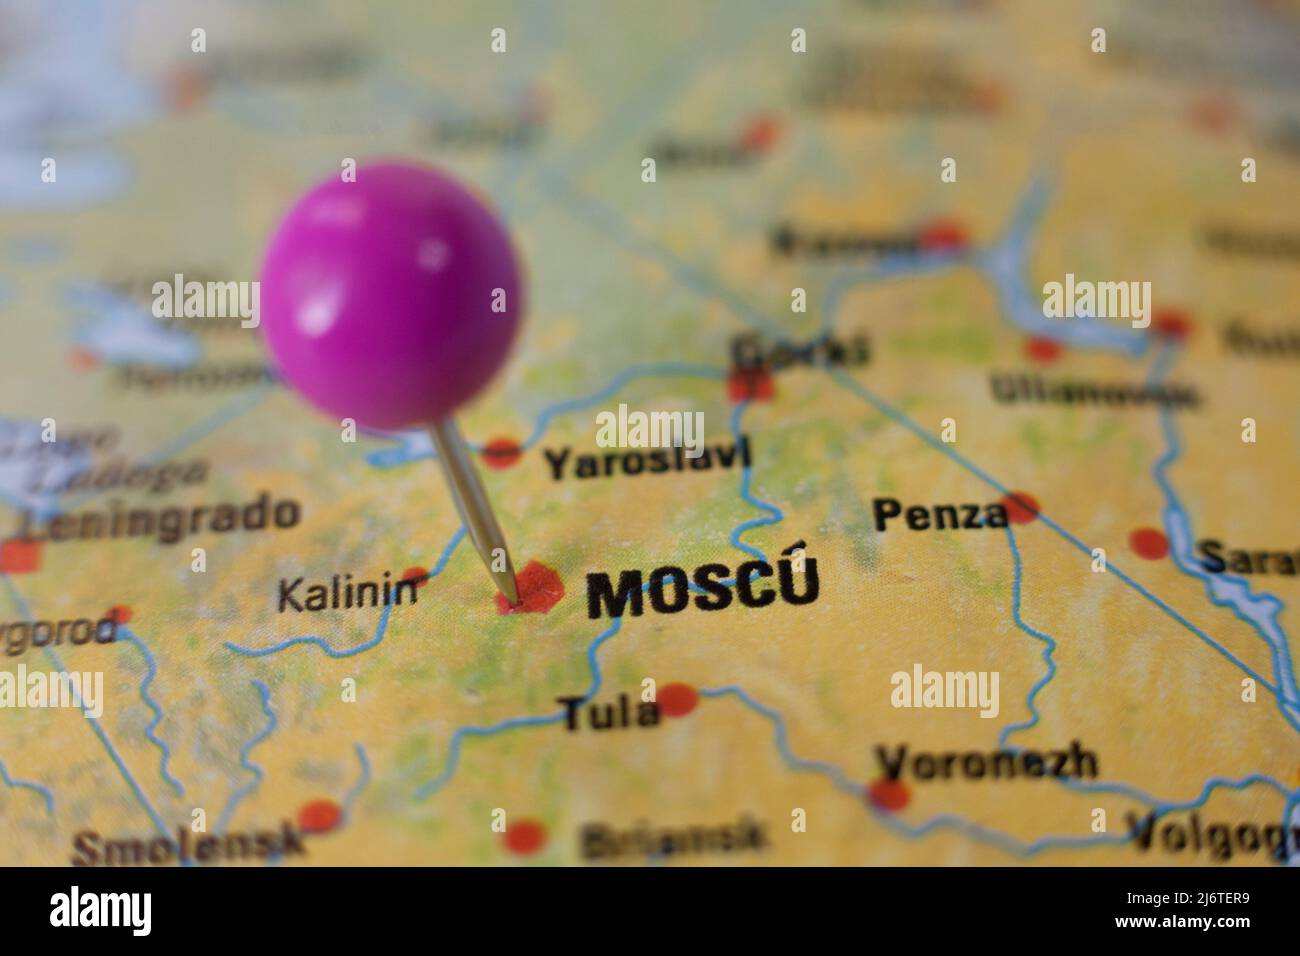 Stecknadelmarkierung auf Moskau, Moscu auf spanisch. Selektiver Fokus auf den Namen der Stadt Stockfoto